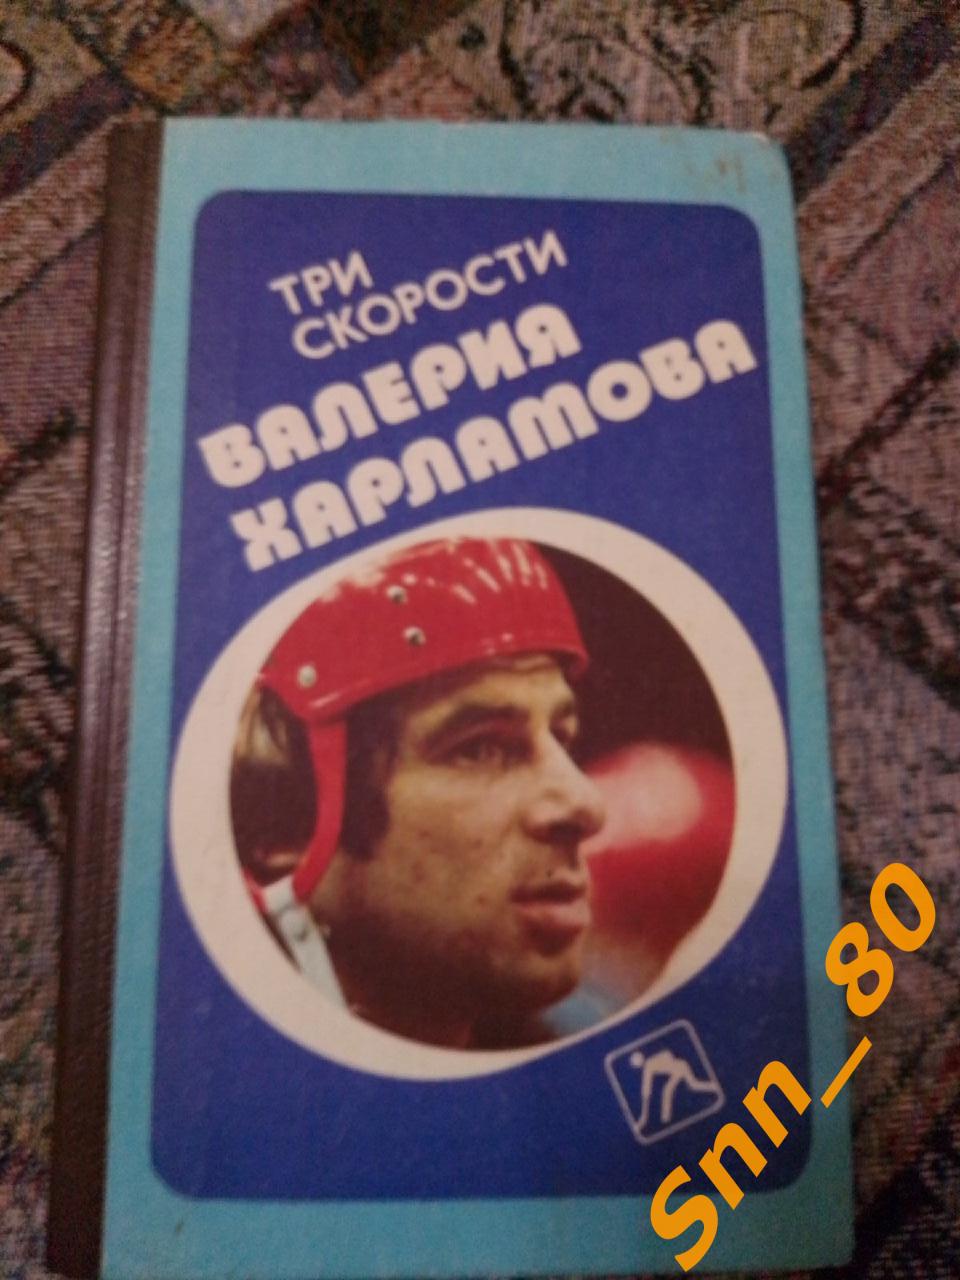 6 Три скорости Валерия Харламова 1988 Б.Левин Москва Военное издательство (31,8)